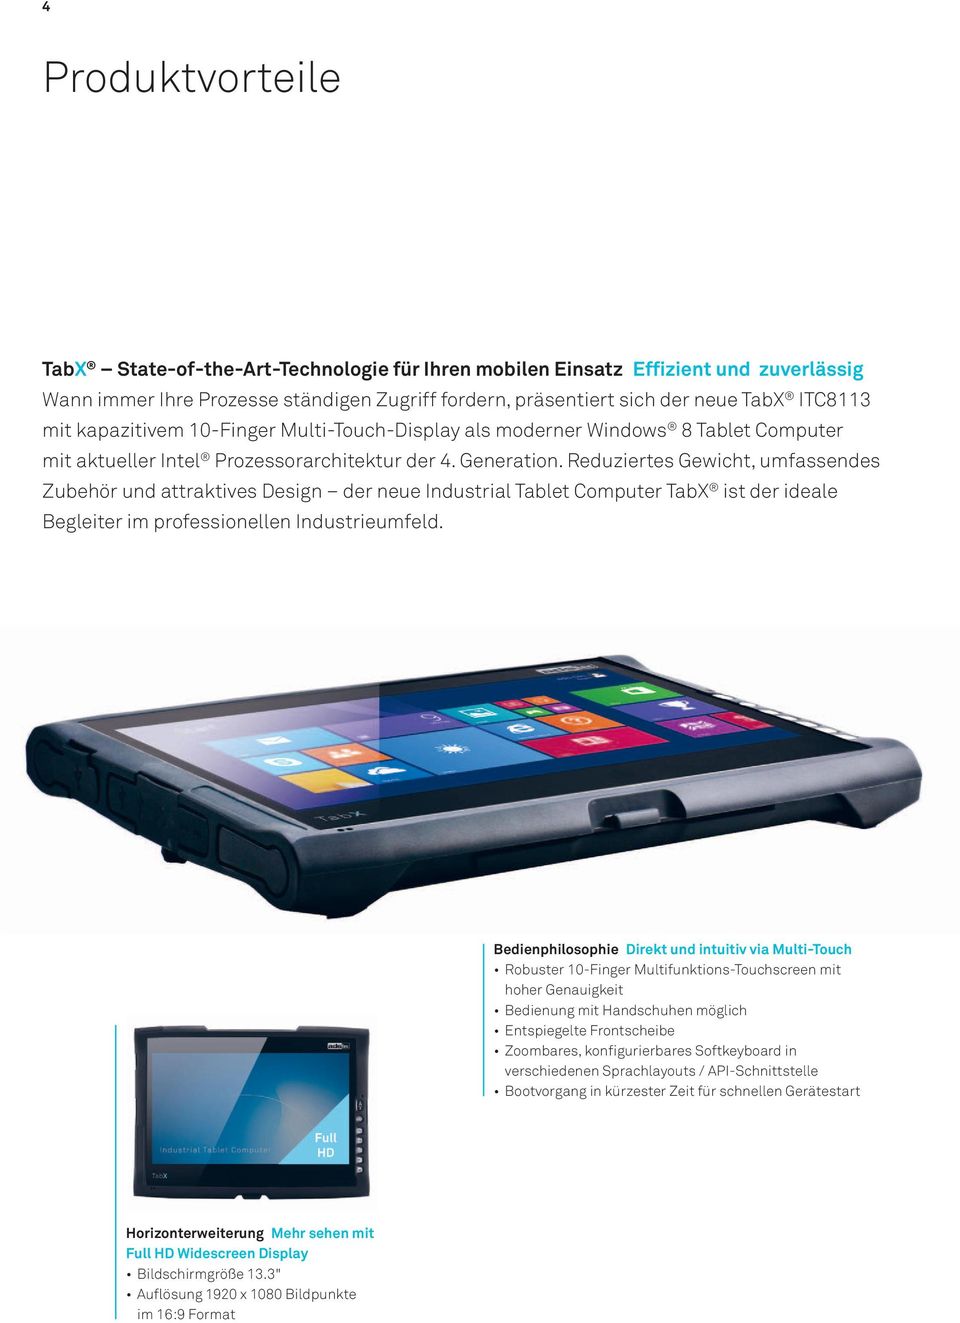 Reduziertes Gewicht, umfassendes Zubehör und attraktives Design der neue Industrial Tablet Computer TabX ist der ideale Begleiter im professionellen Industrieumfeld.